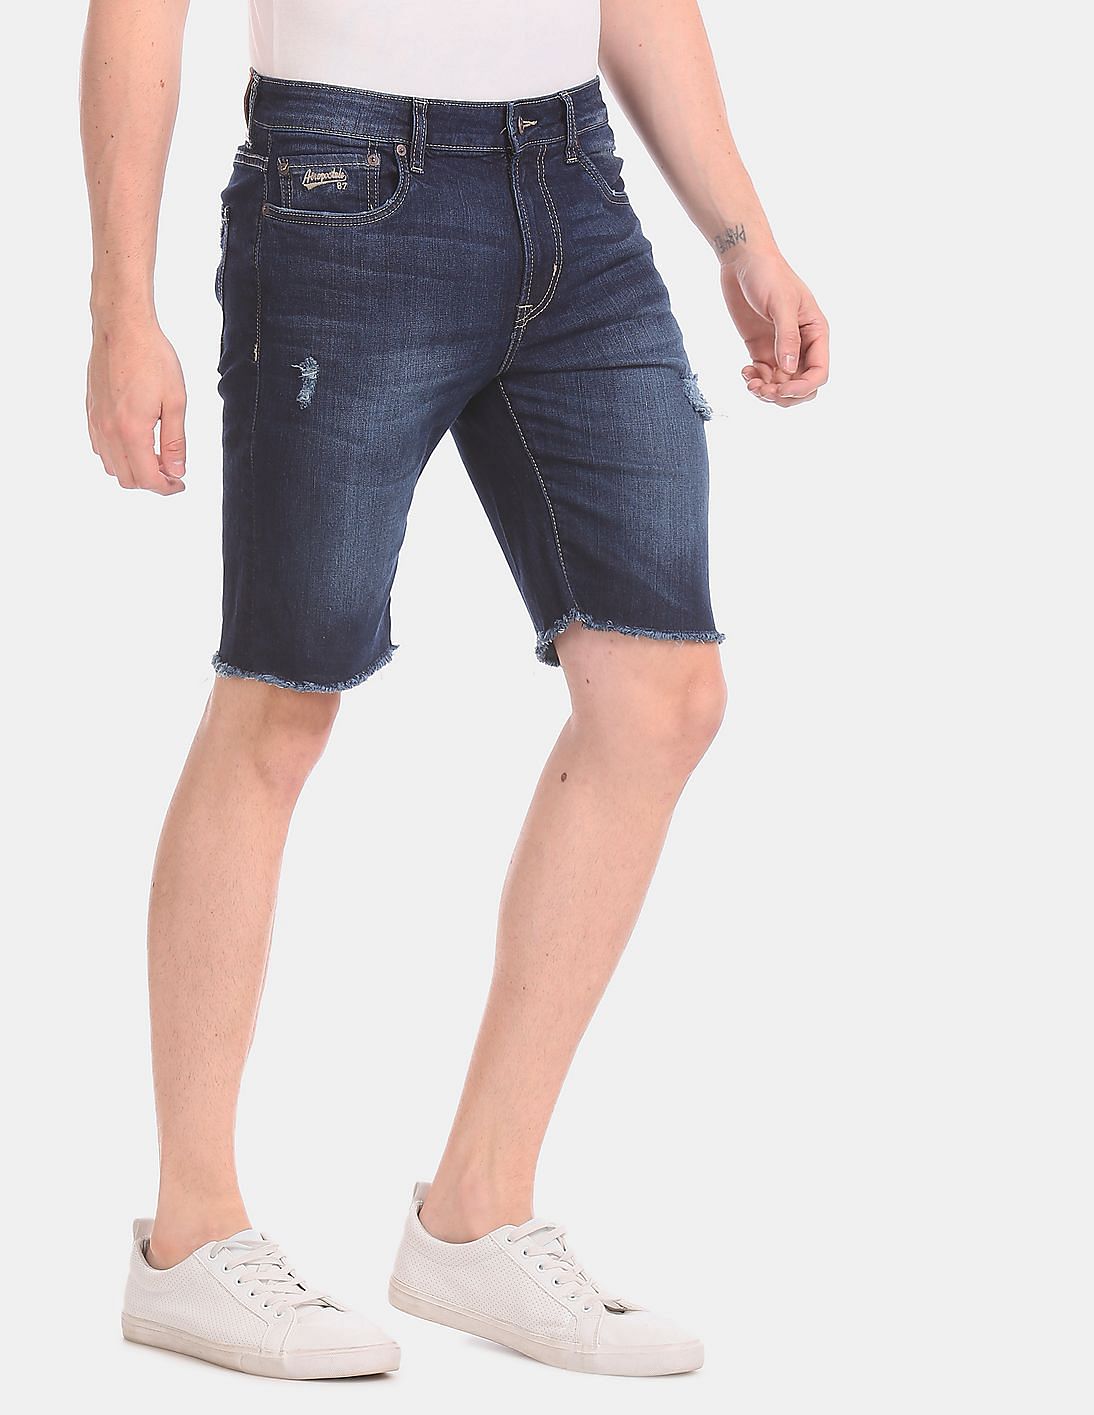 Buy Aeropostale Blue Slim Fit Cut Off Denim Shorts - NNNOW.com